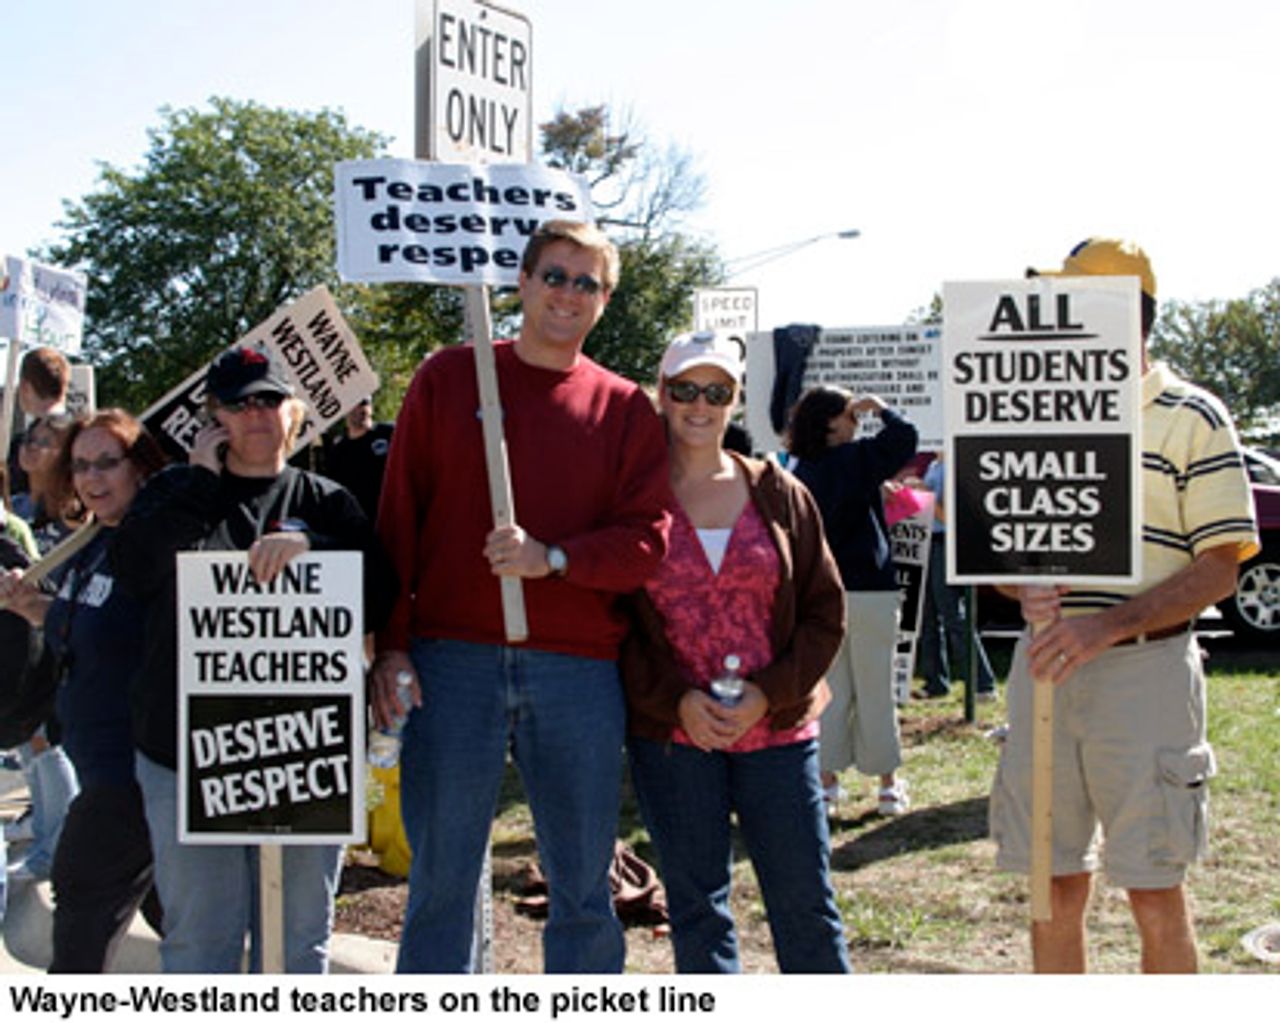 Wayne-Westland teachers on the picket line